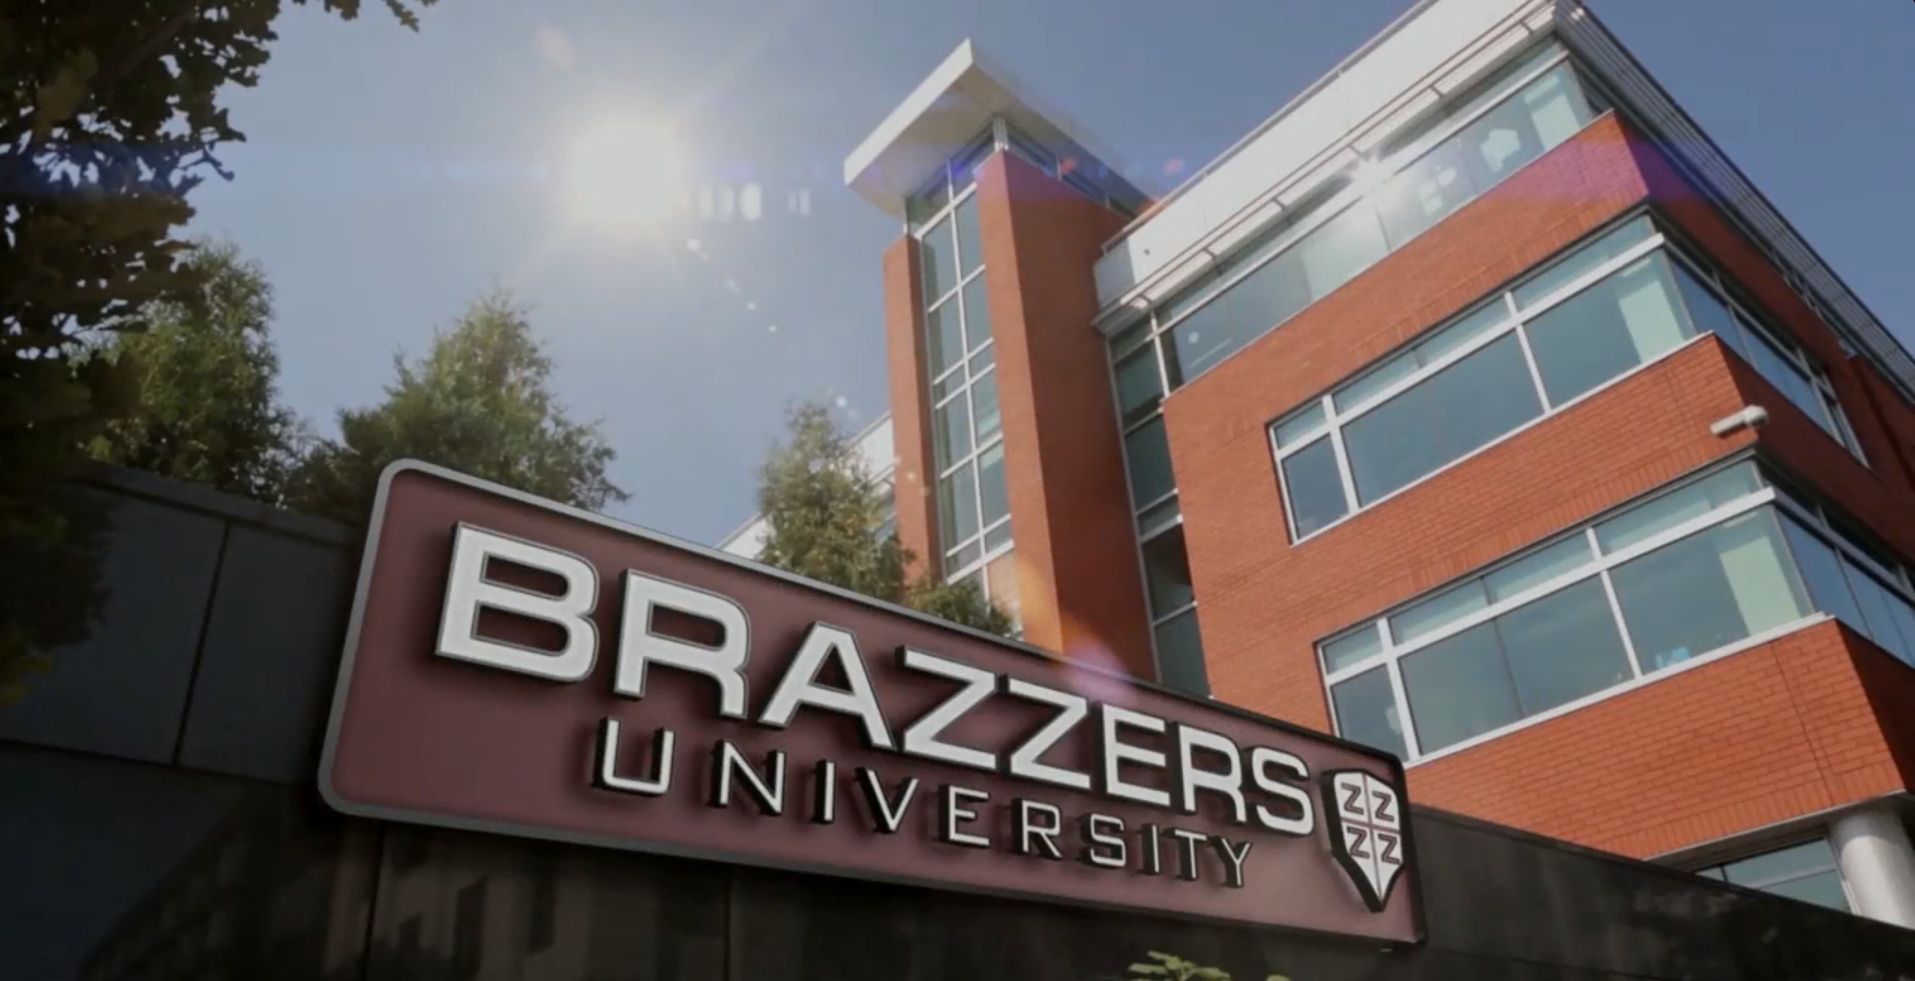 Brazzers university